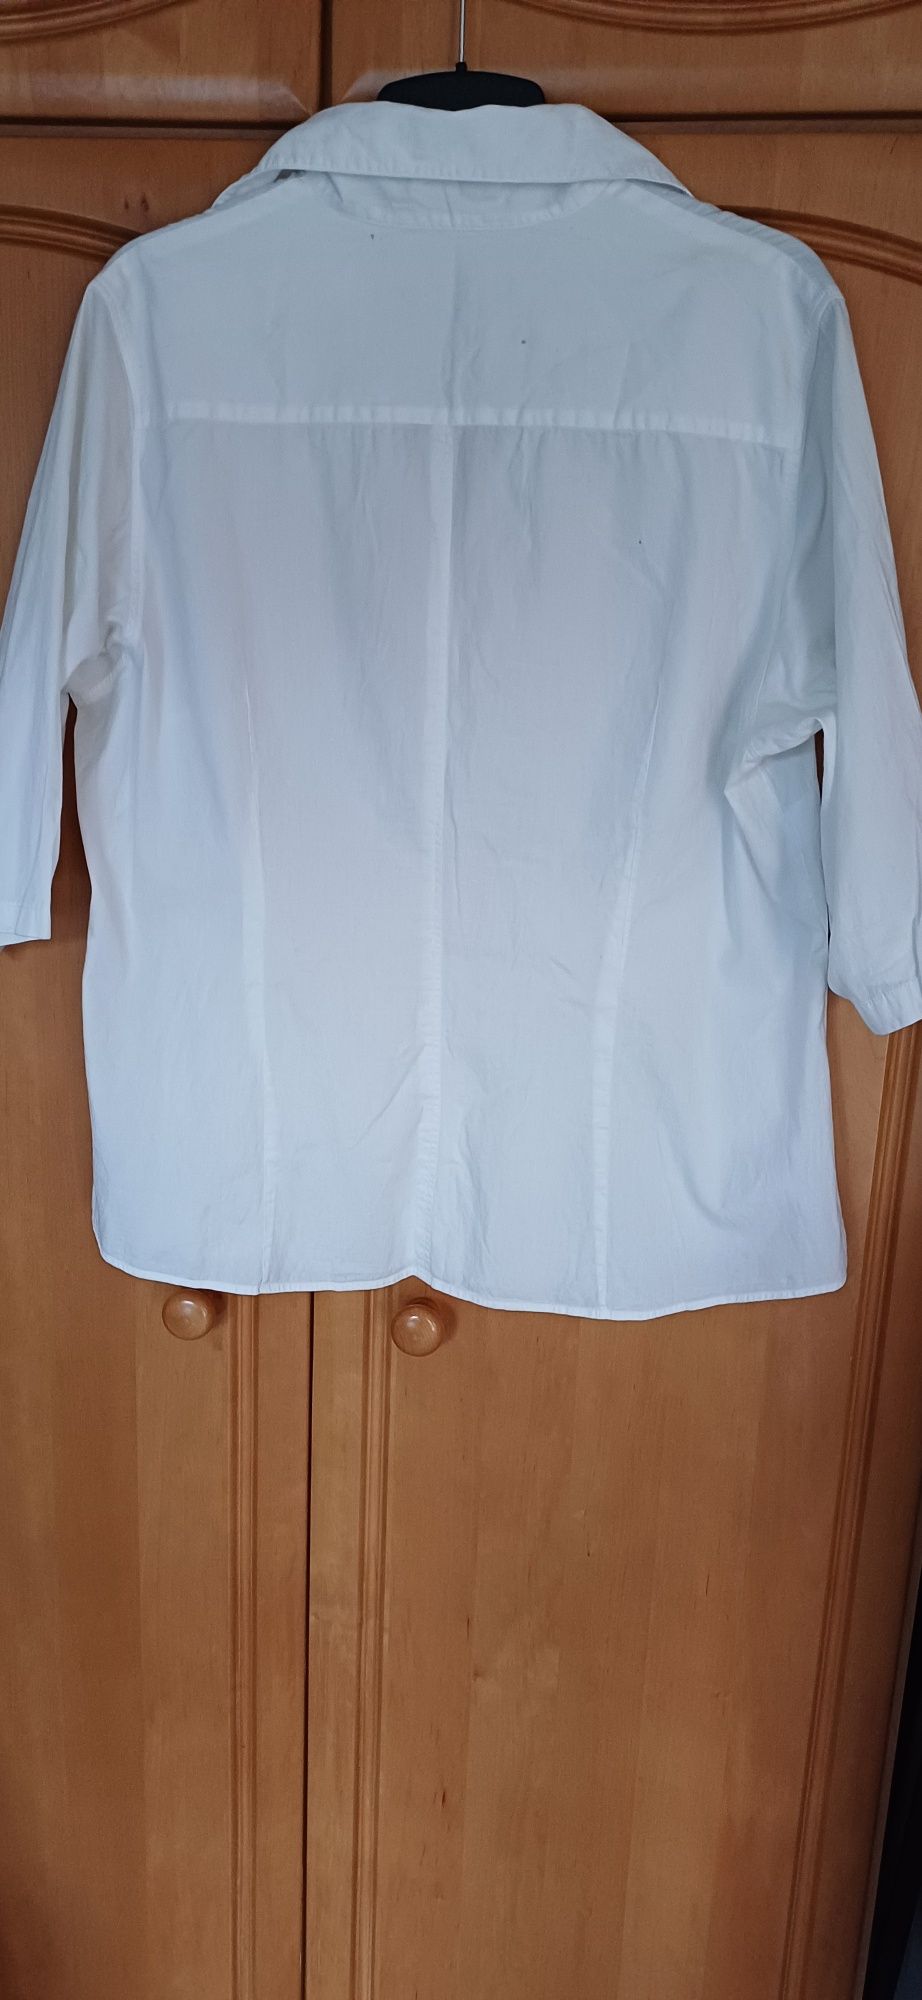 Bluzka biała bawełna R.48. 61 CM POD PACHAMI